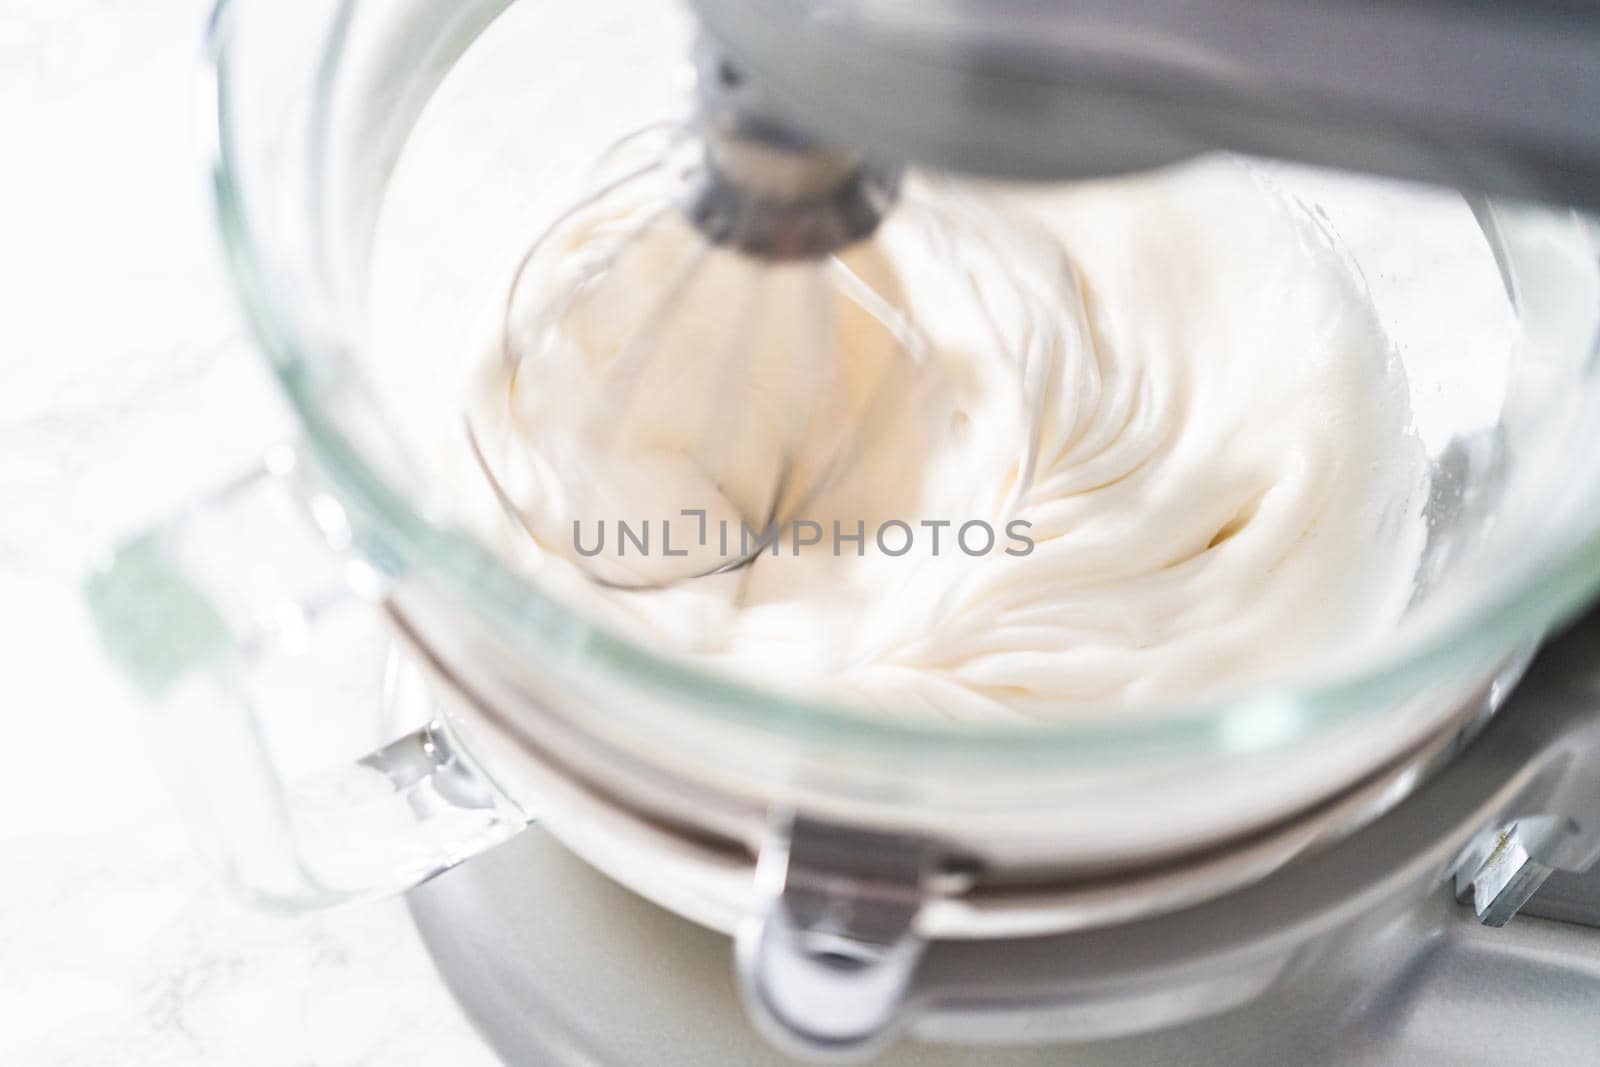 Mixing ingredients in kitchen electric mixer to bake meringue cookies.